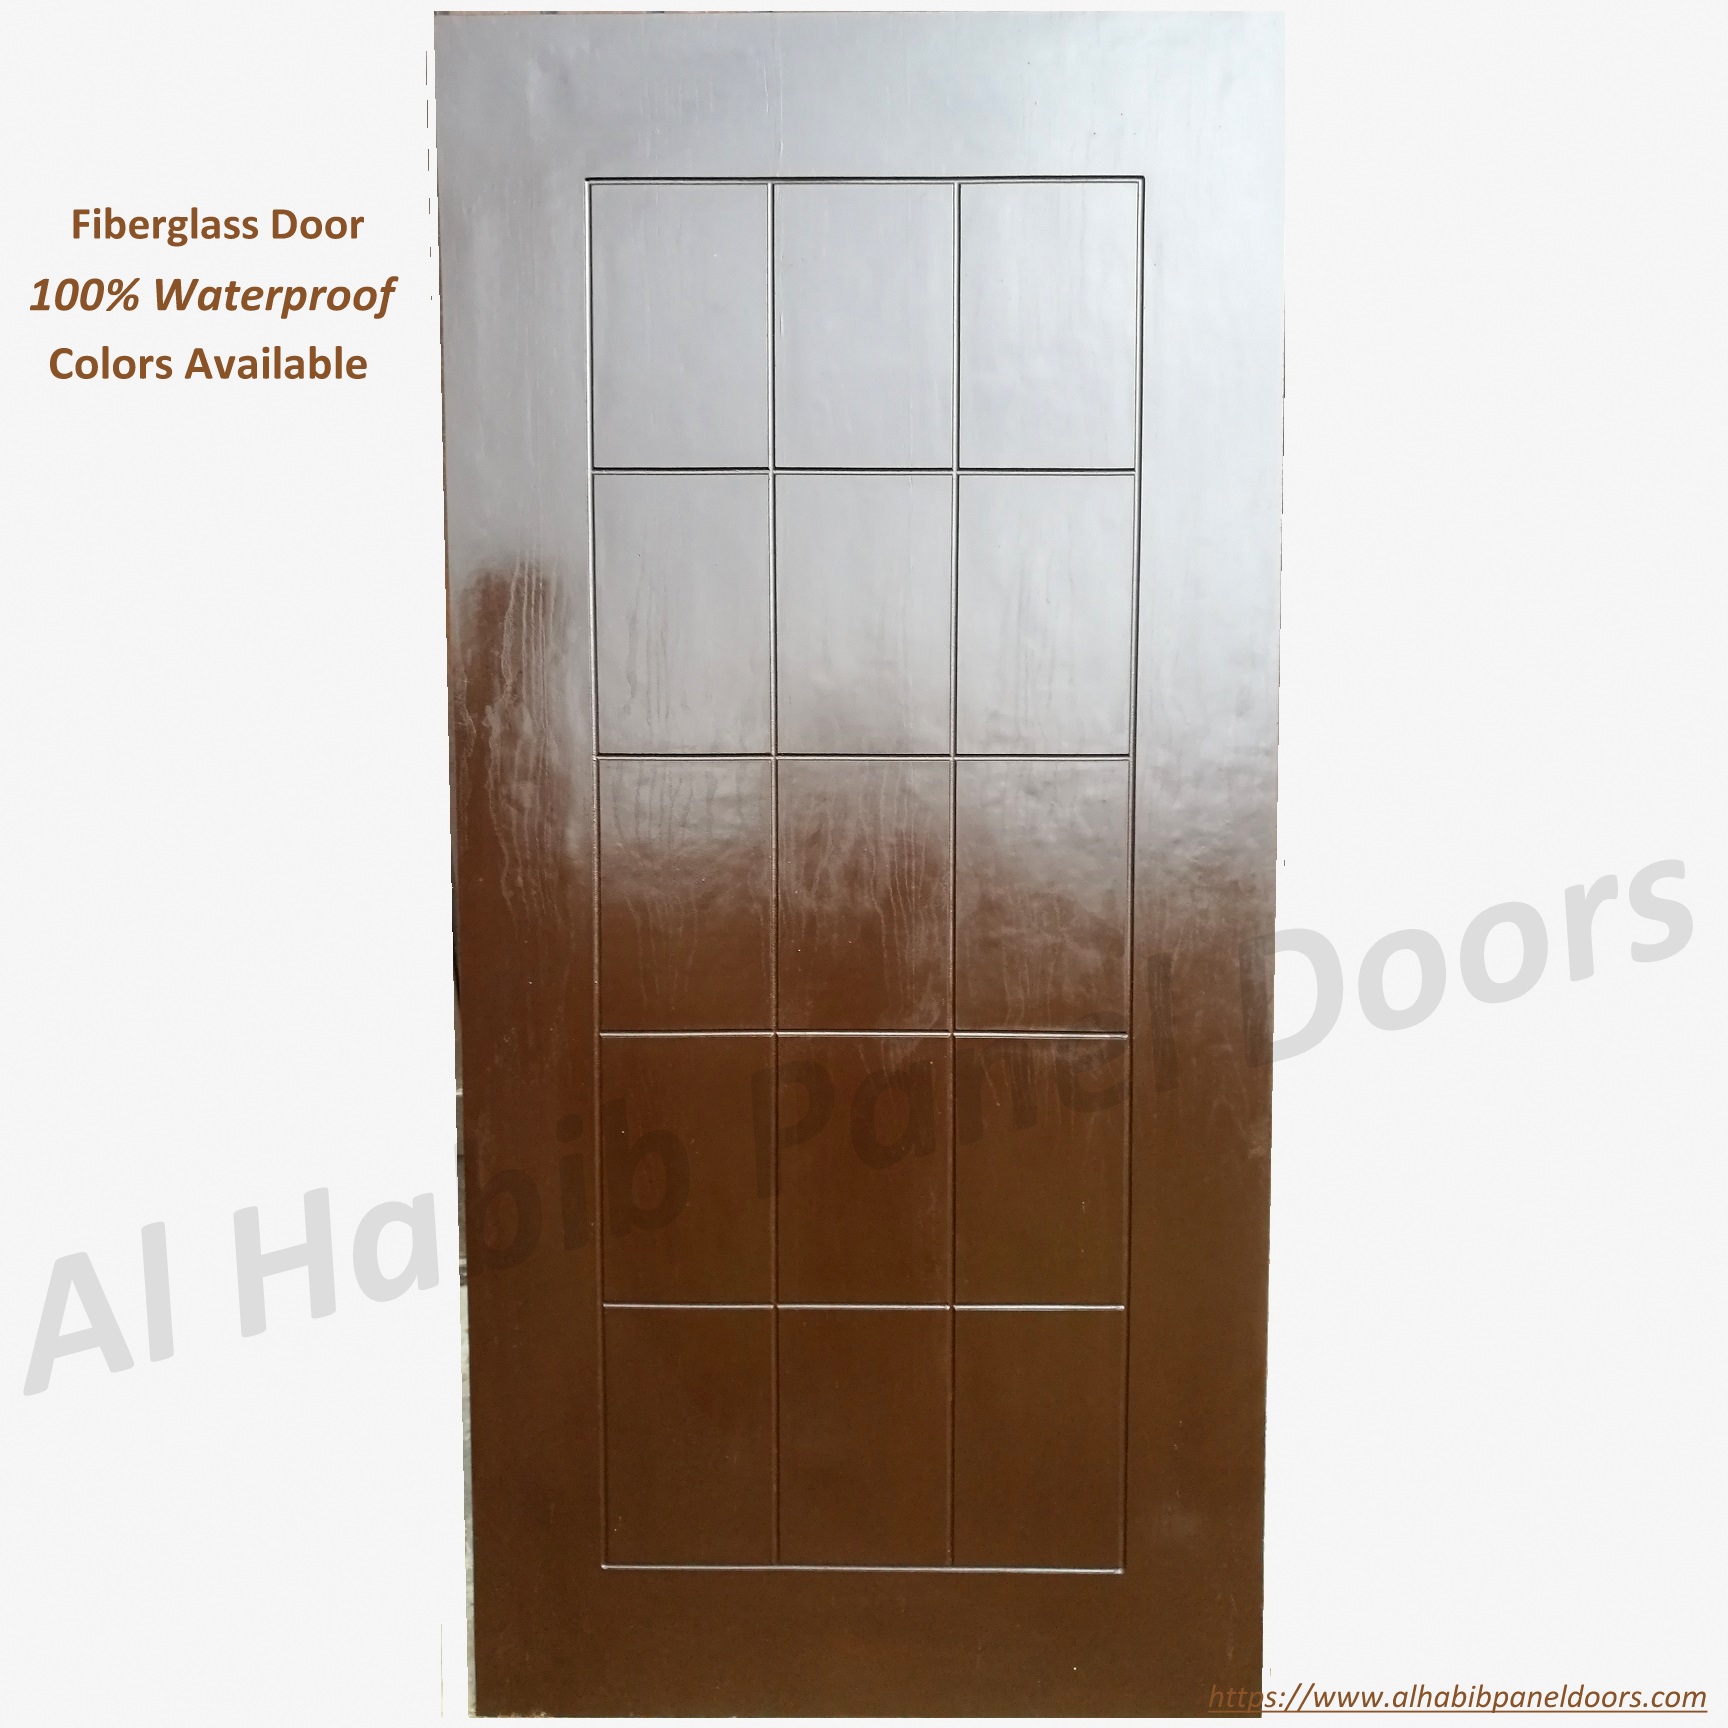 New Fiberglass Door Design